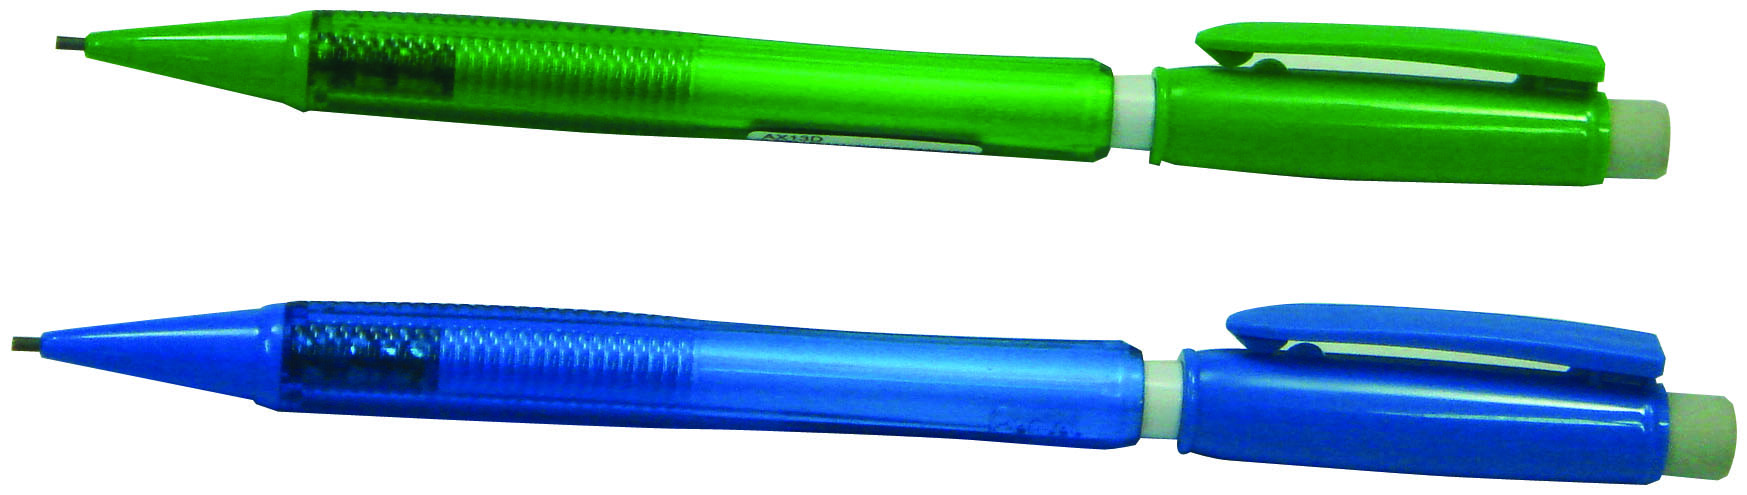 Pentel fiesta mechanical pencil .5mm,green